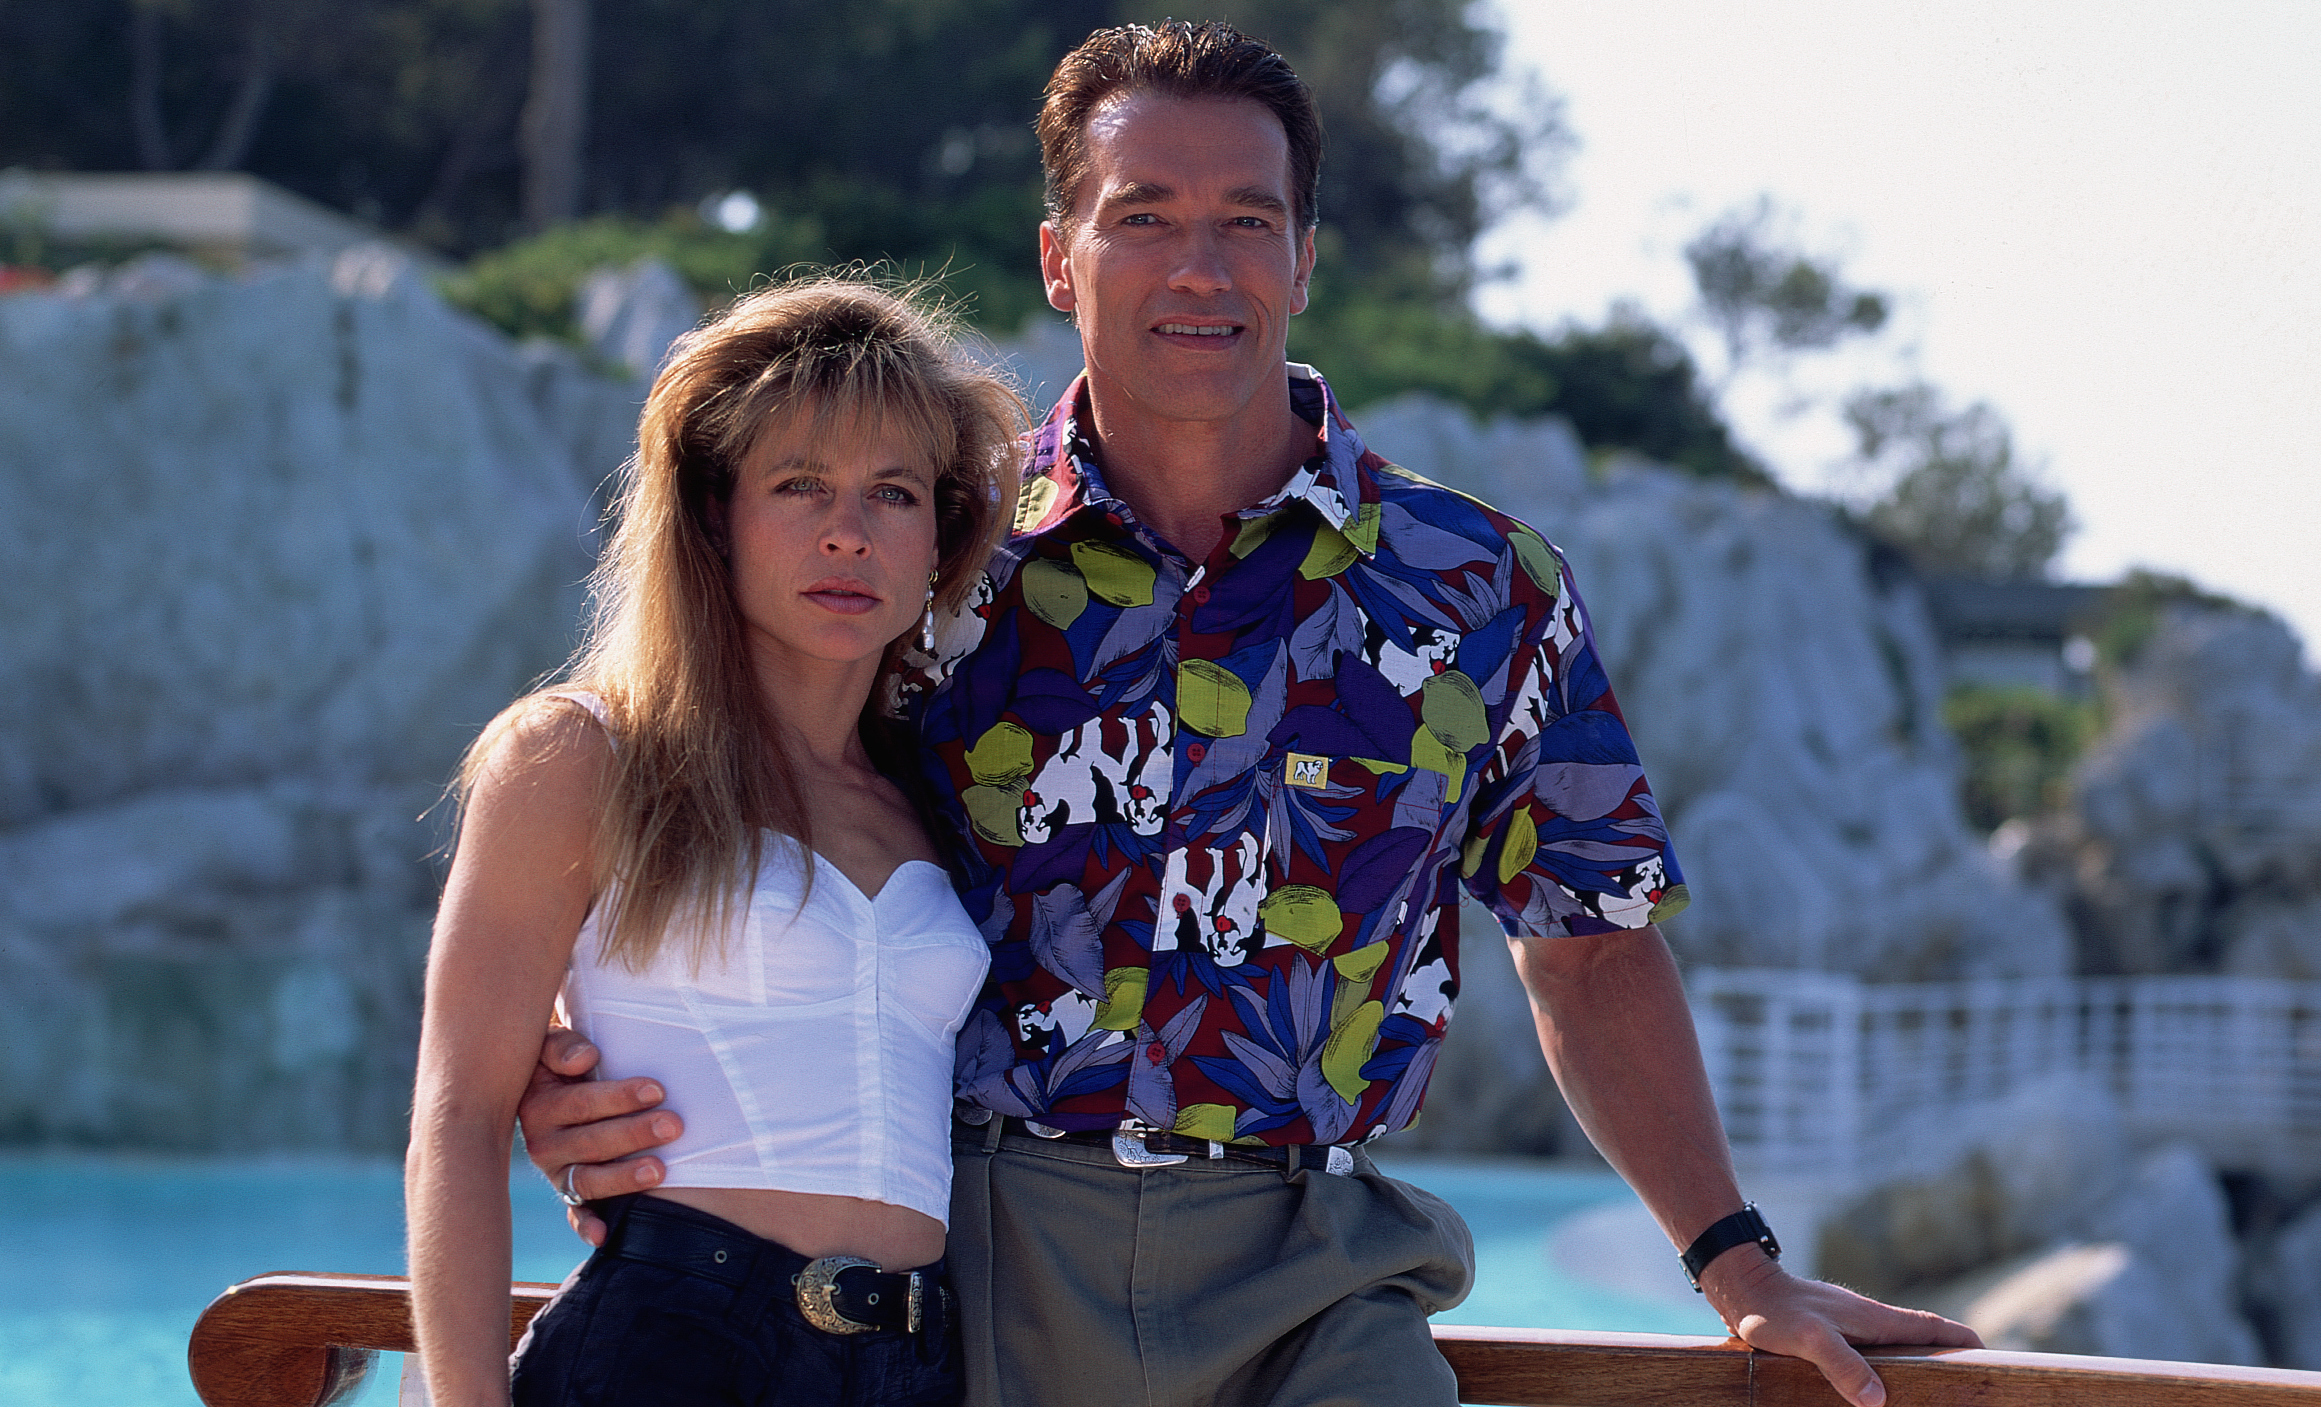 El orgullo herido de Arnold Schwarzenegger ante la musculatura de Linda Hamilton